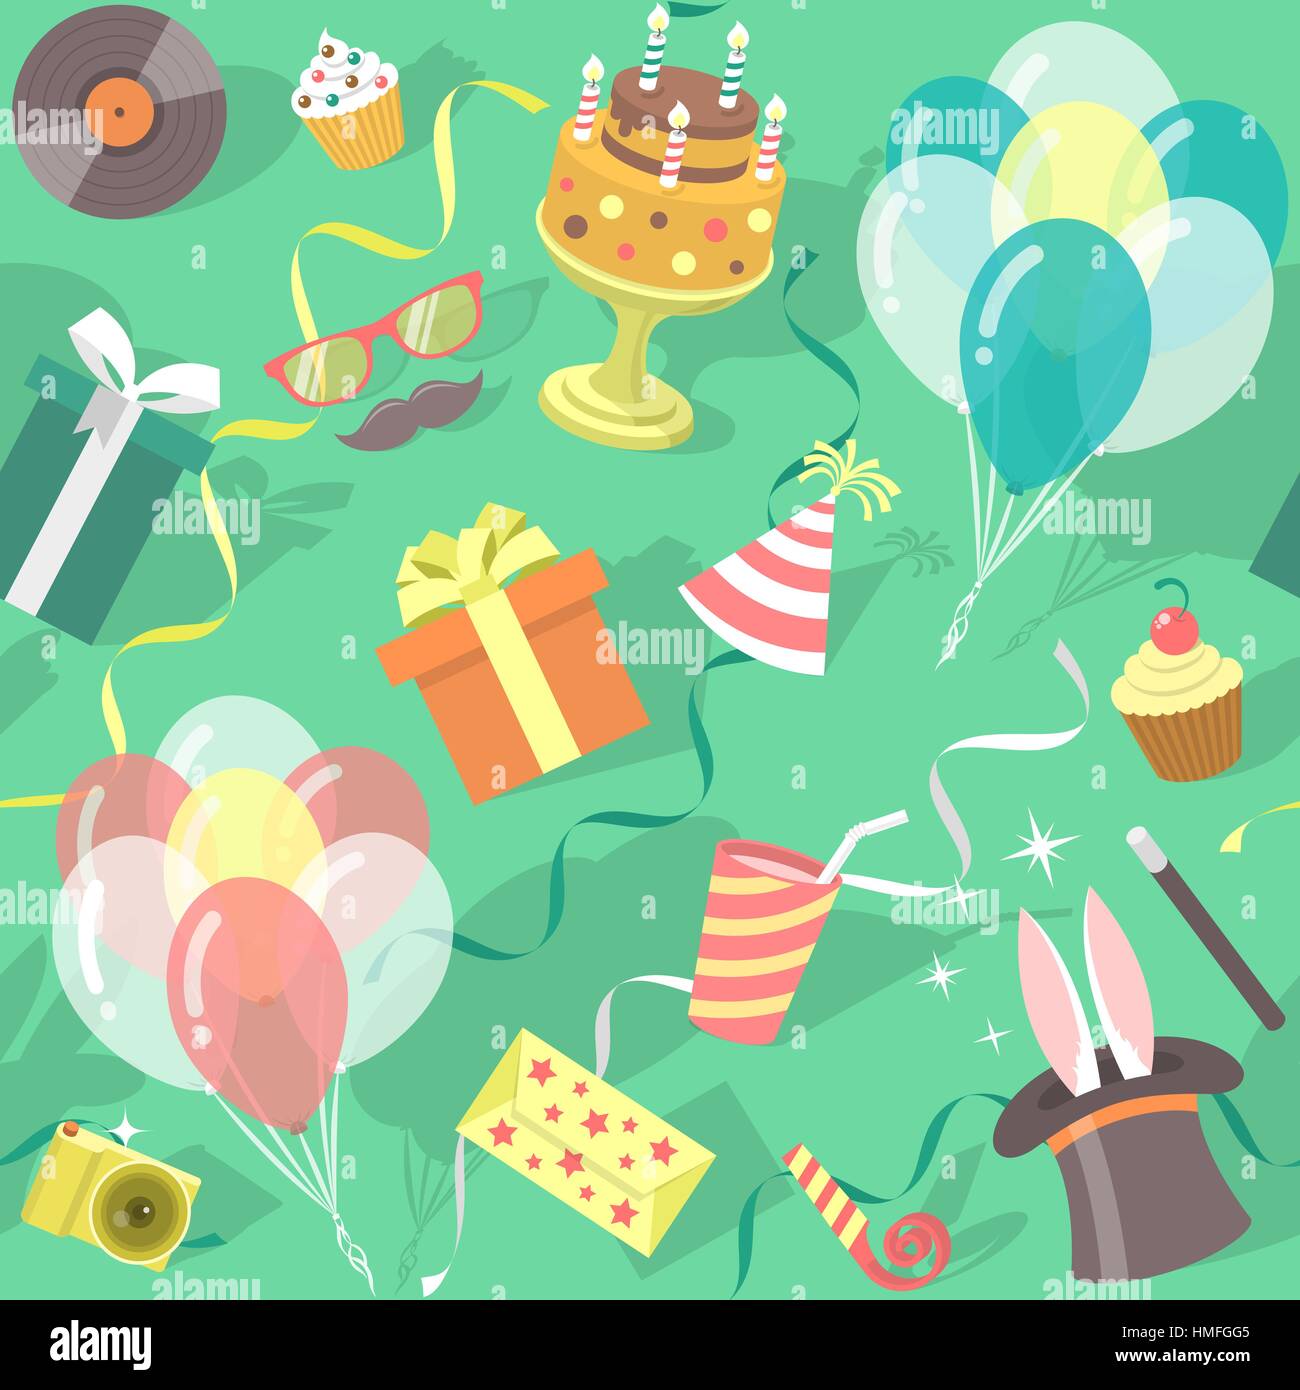 Piso moderno vector patrón fiesta de cumpleaños perfecta con coloridos iconos de cajas de regalo, globos, torta de cumpleaños, trucos de magia, gorro de fiesta etc. invitación Ilustración del Vector